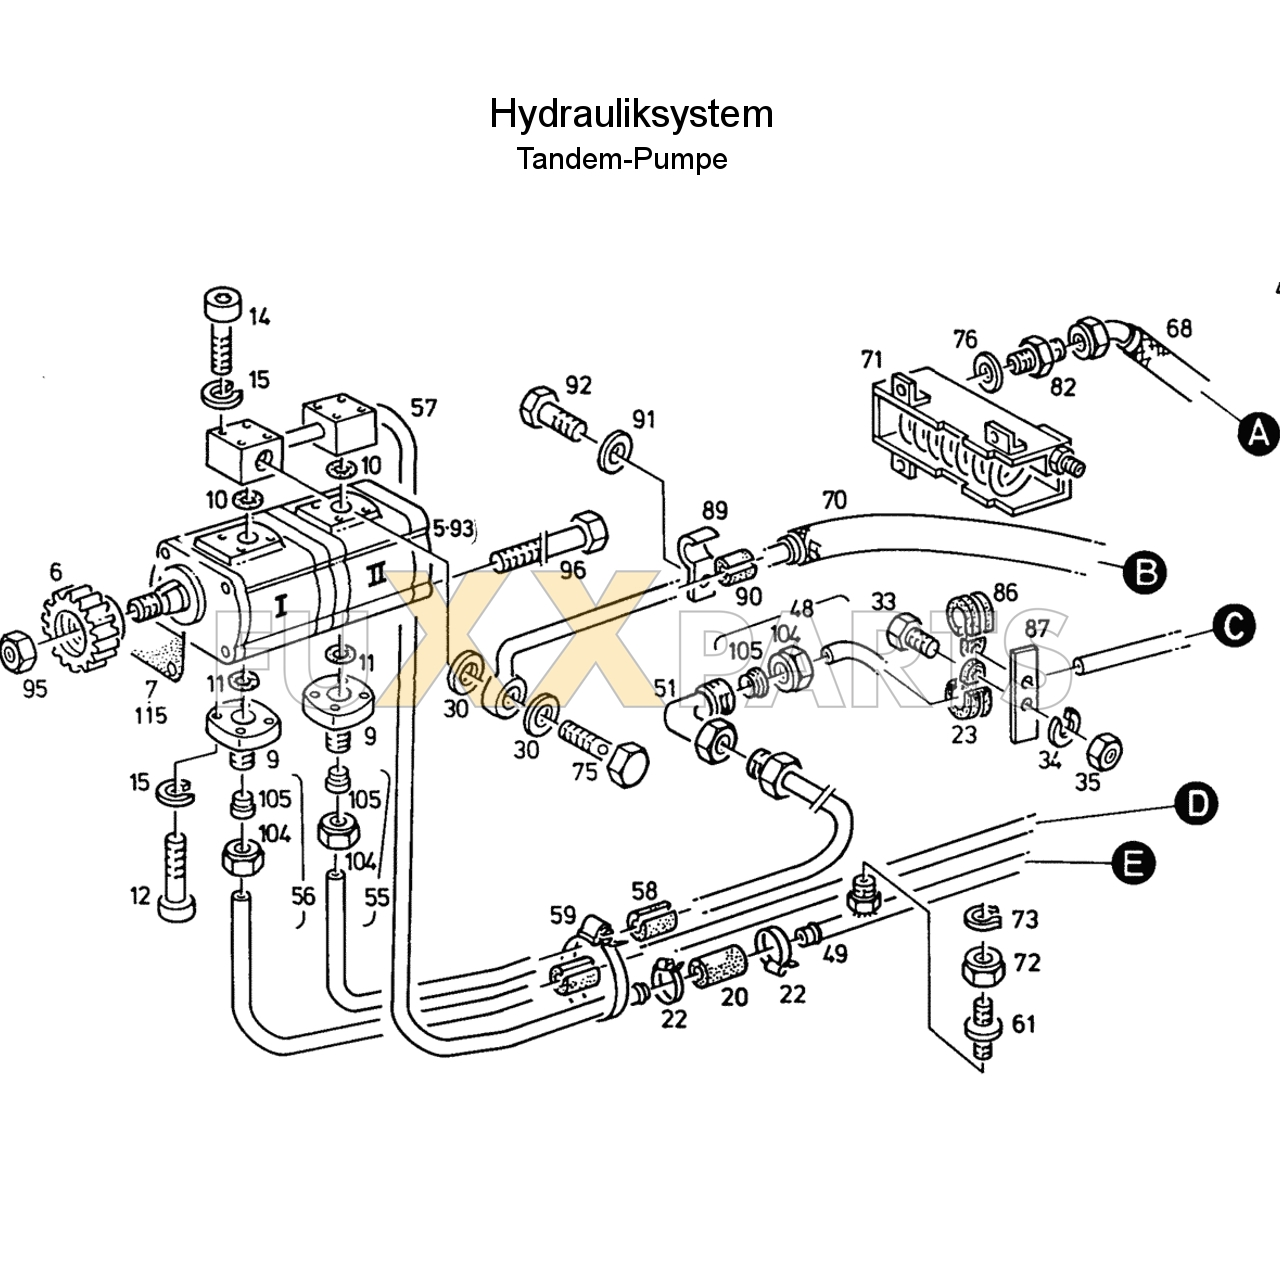 D 6807 C Hydrauliksystem Tandem 1